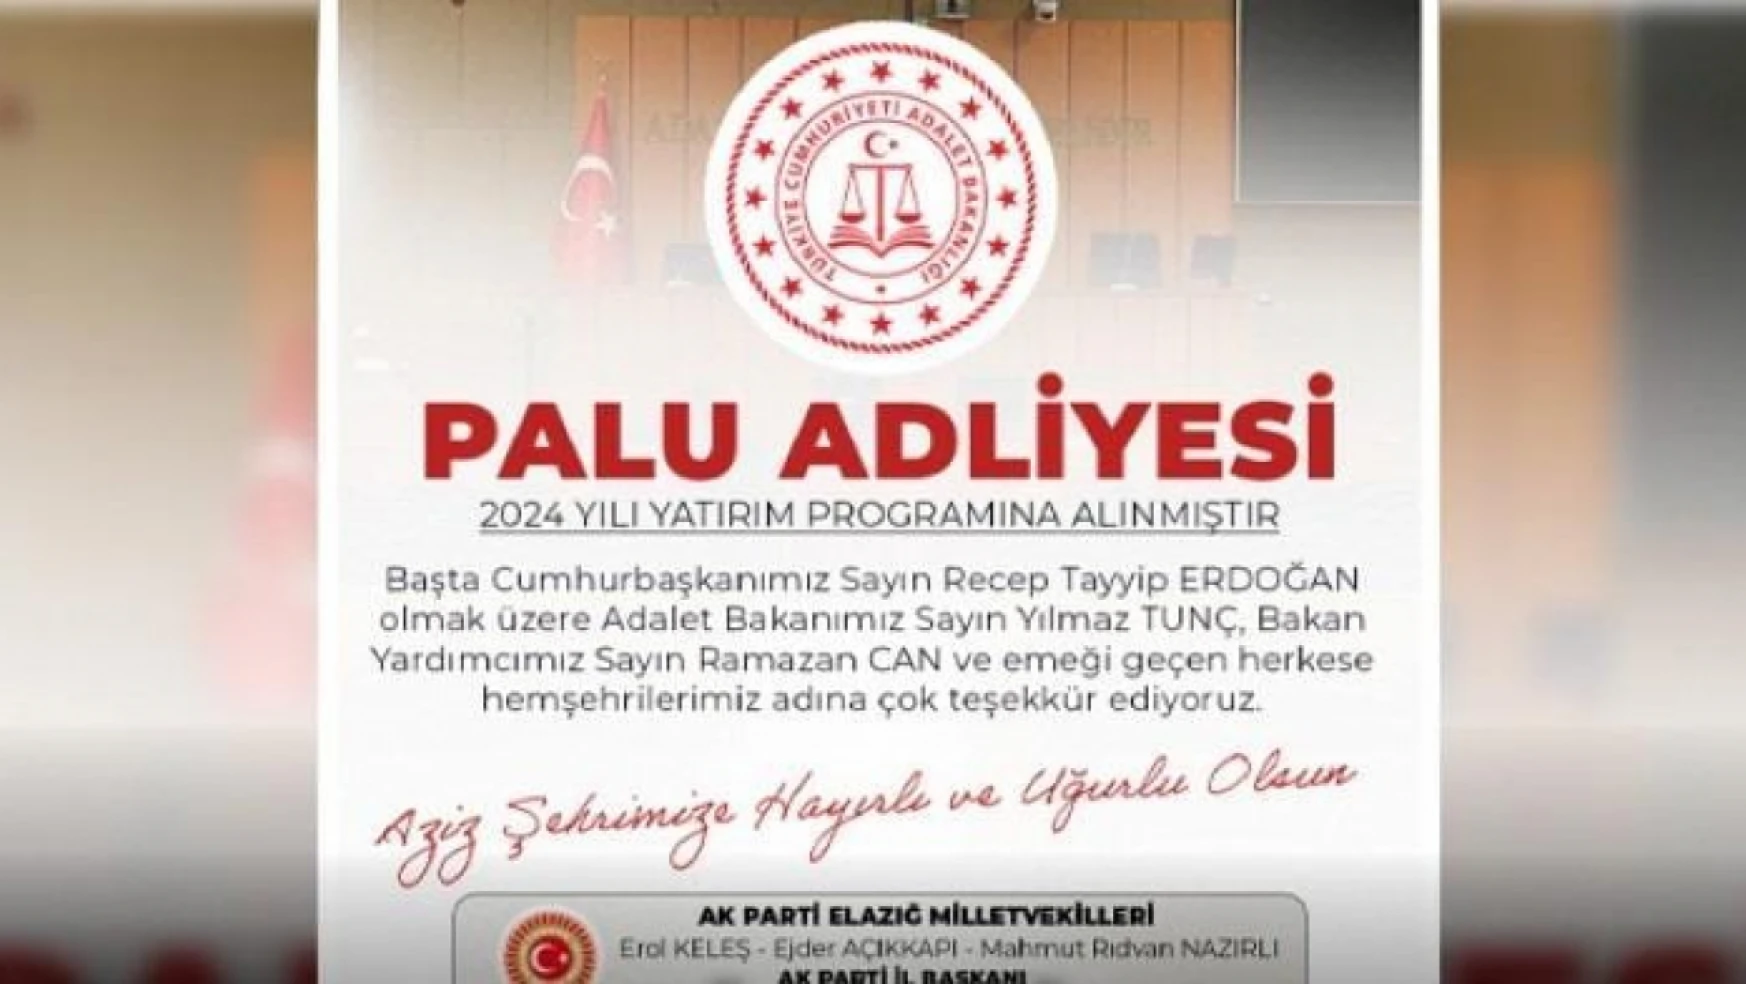 Palu adliyesi 2024 yılı yatırım programına alındı